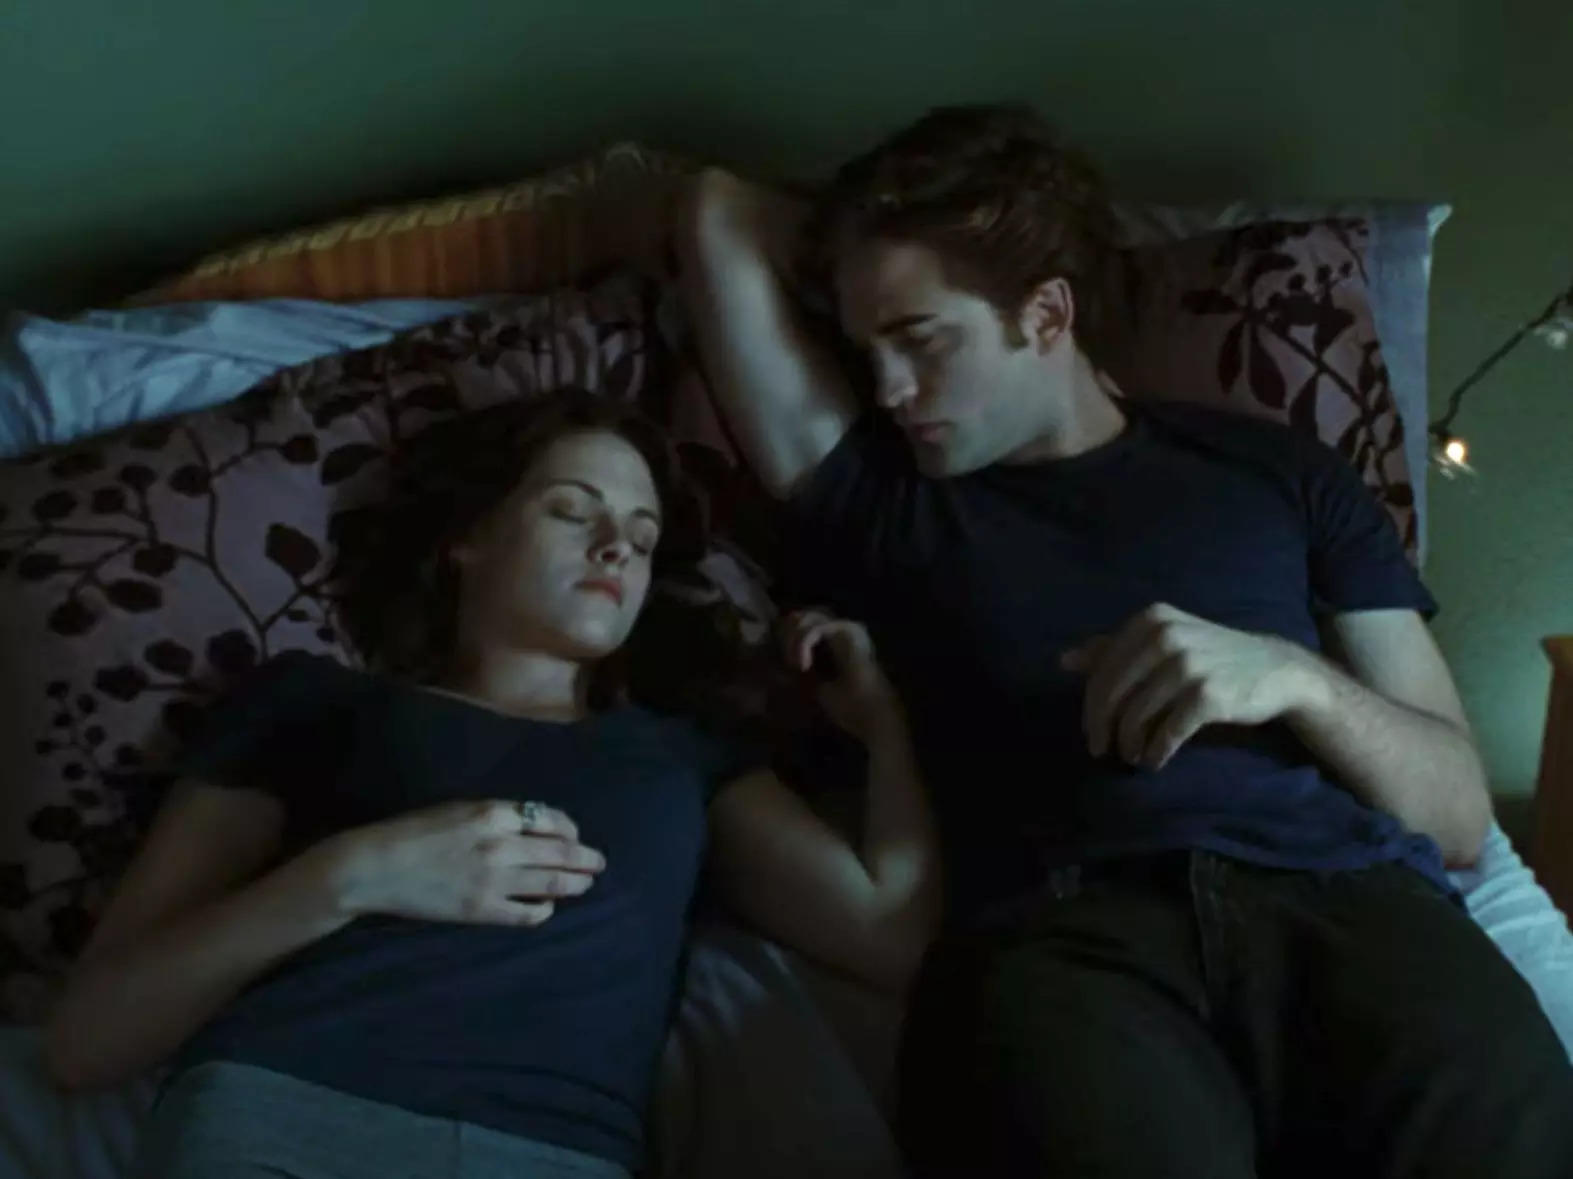 Edward (Robert Pattinson) watches Bella (Kristen Stewart) sleep in a scene from "Twilight."